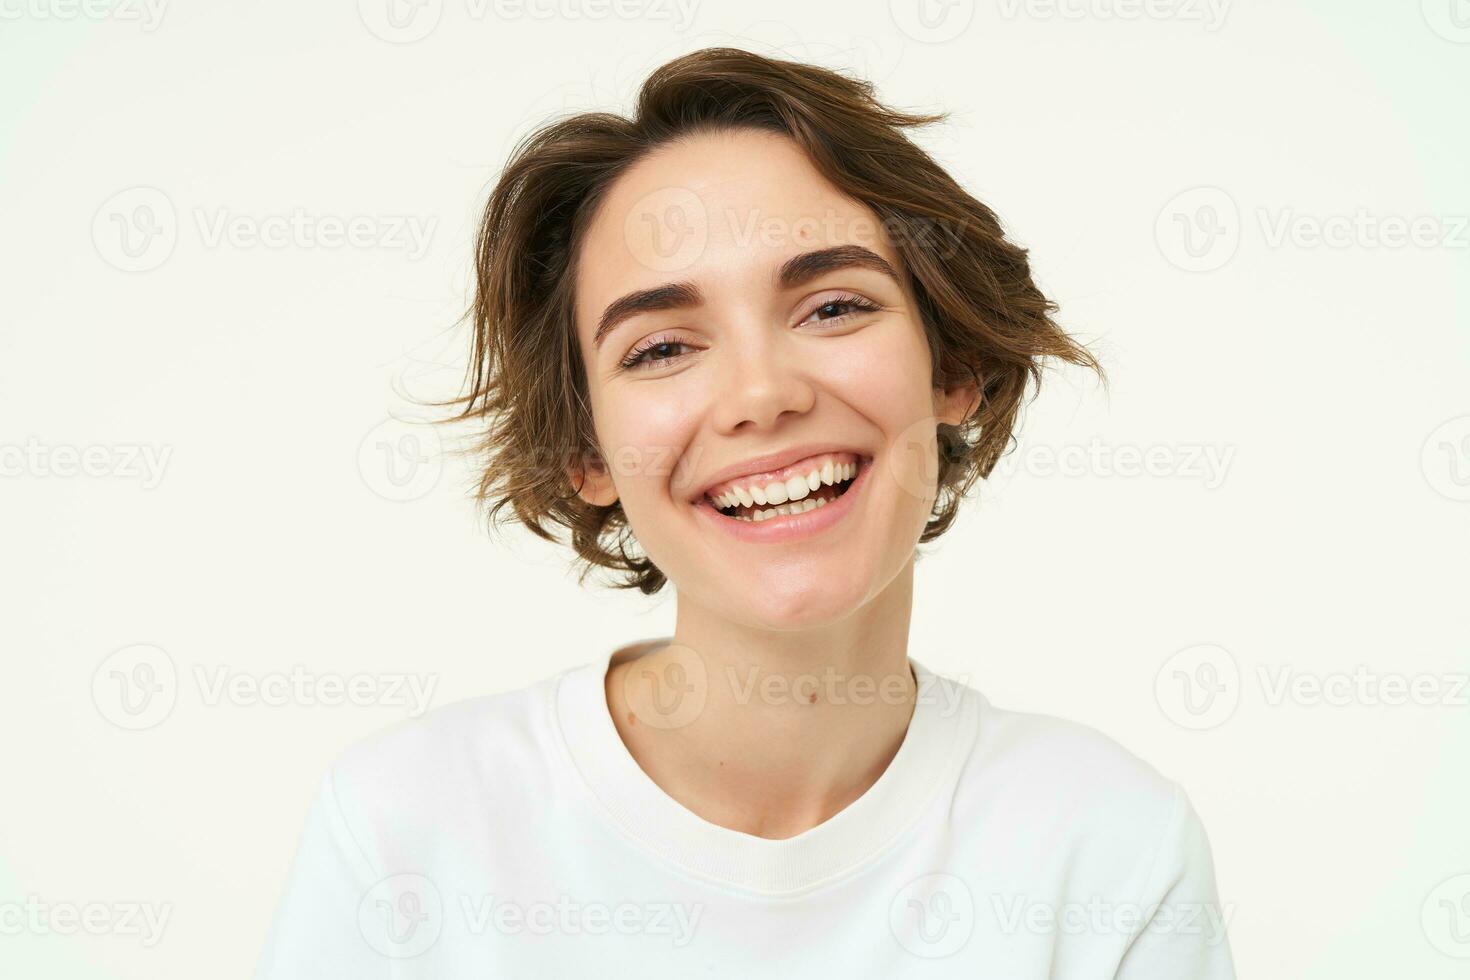 dichtbij omhoog portret van brunette vrouw lachend en lachend, uitdrukken oprecht emoties, poseren tegen wit studio achtergrond foto